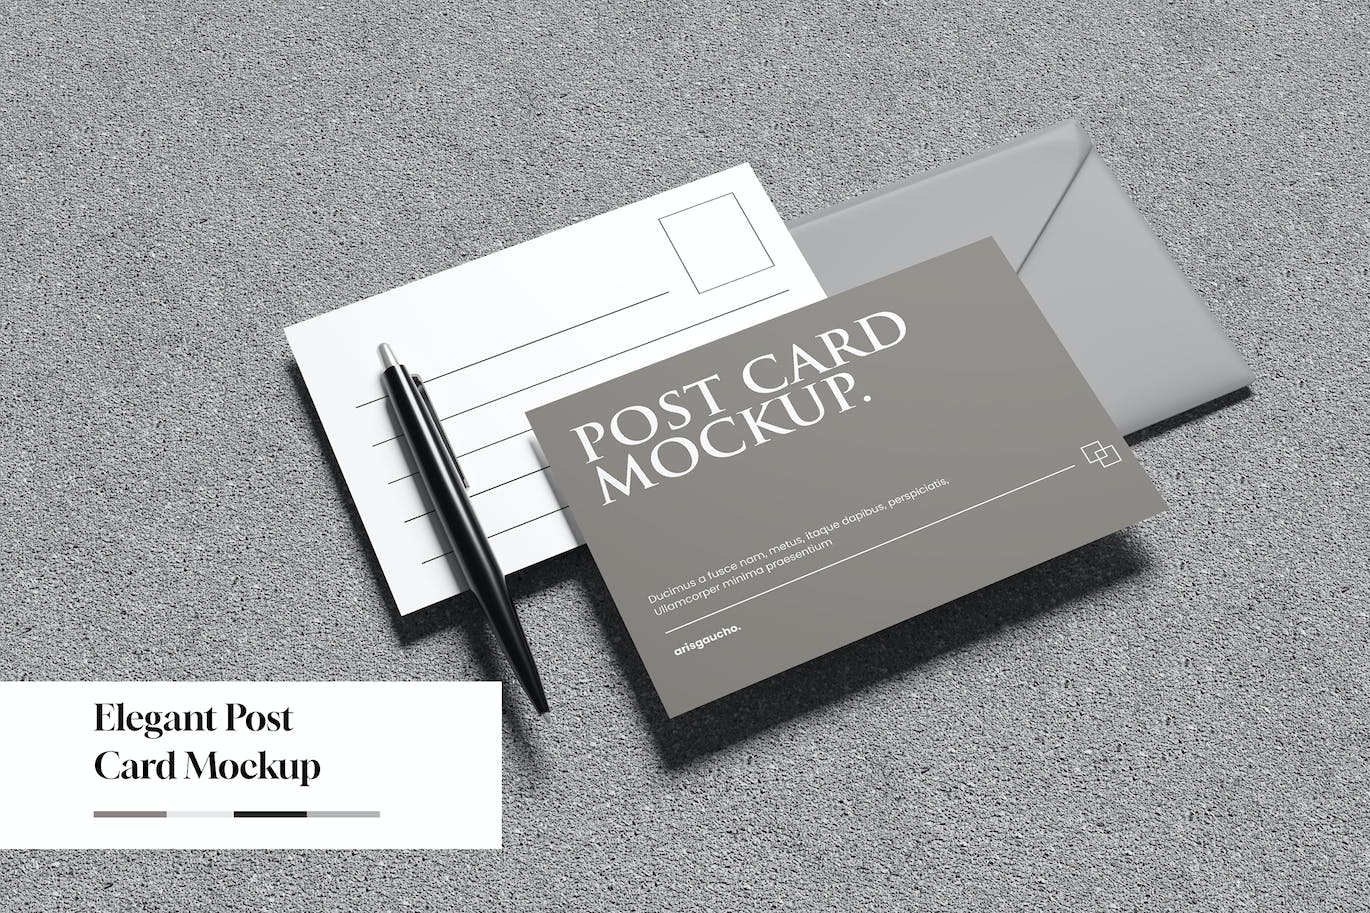 优雅的明信片设计样机模板 Elegant Post Card Mockup 样机素材 第1张